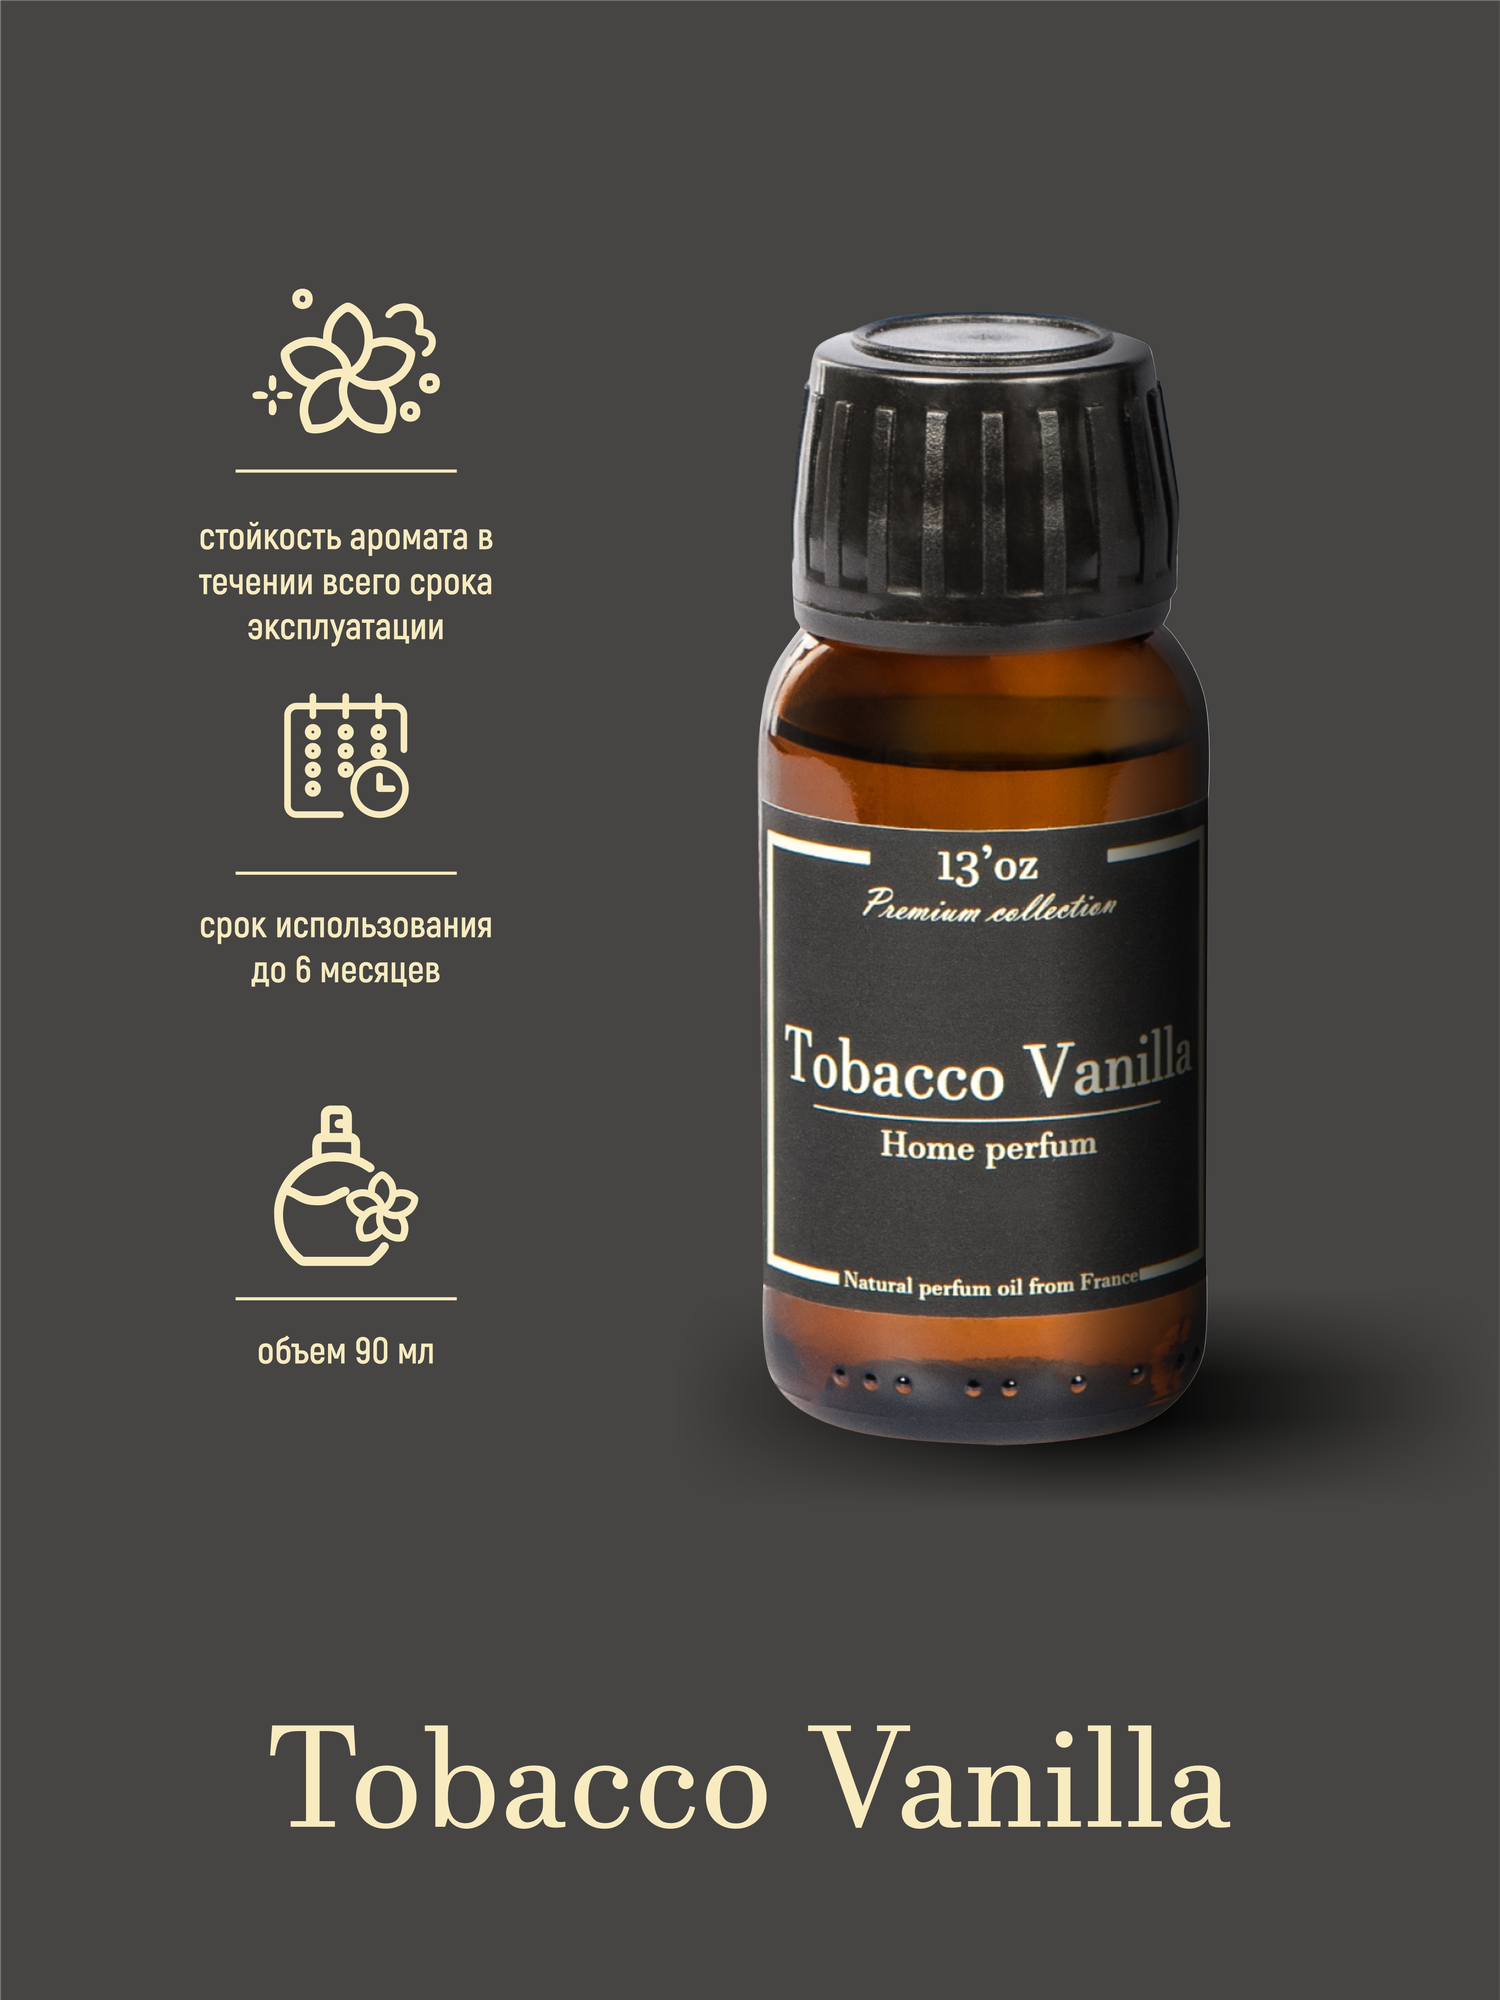 Ароматический диффузор 13'oz Tobacco Vanilla 100 ml — купить в  интернет-магазине по низкой цене на Яндекс Маркете